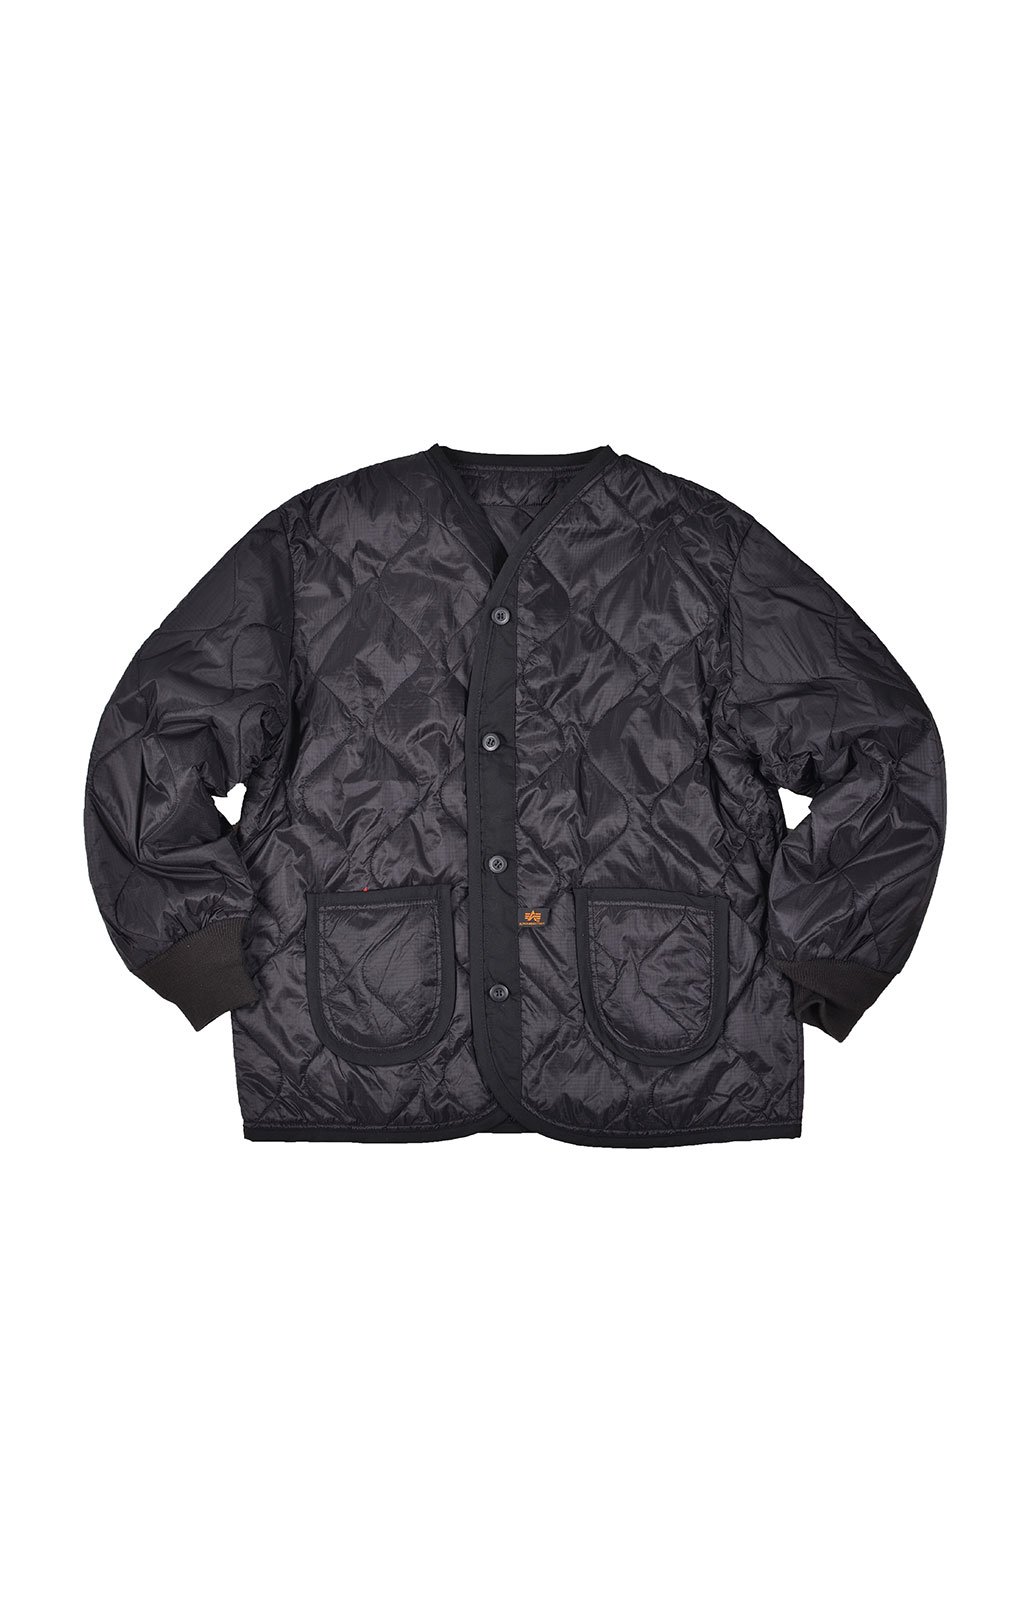 Куртка-подстёжка ALPHA INDUSTRIES CLASSIC M-65 с карманами и манжетами black 